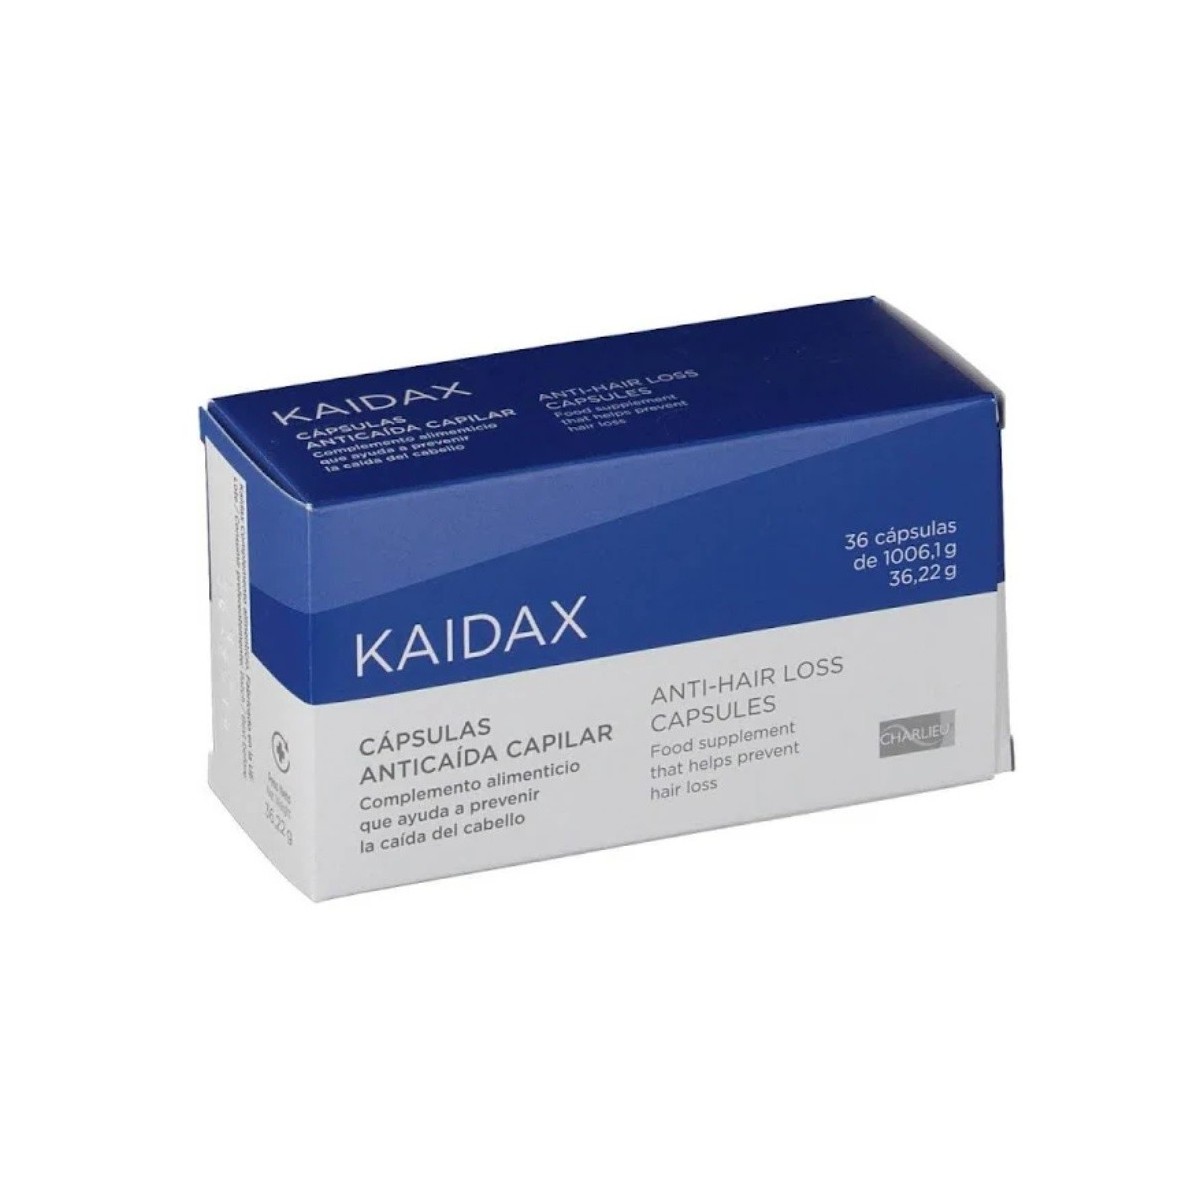 kaidax 36 capsulas